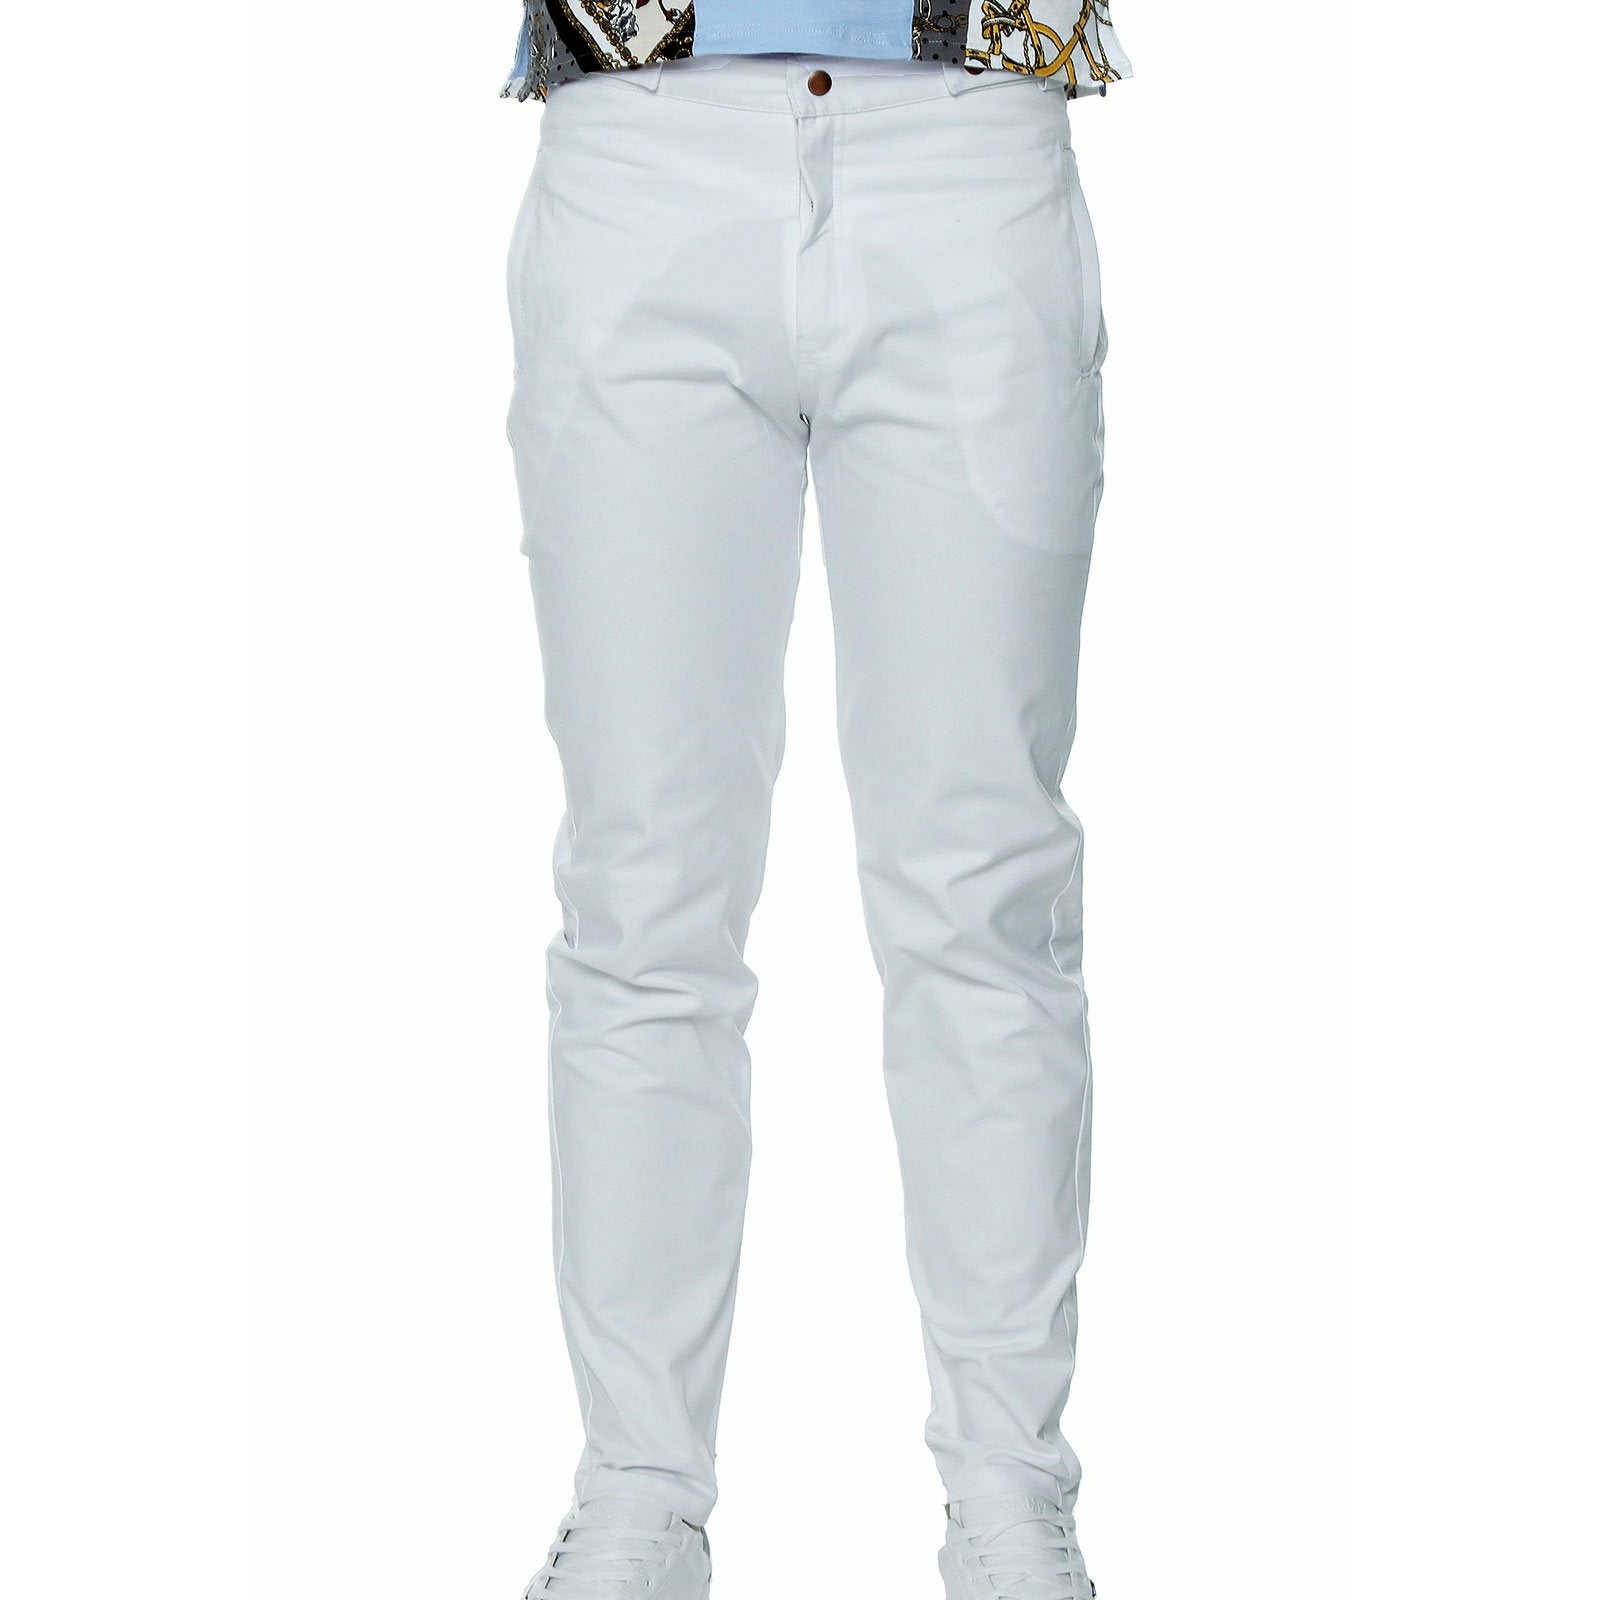 Pantalón Blanco para hombre, pantalón básico para el guardaropas